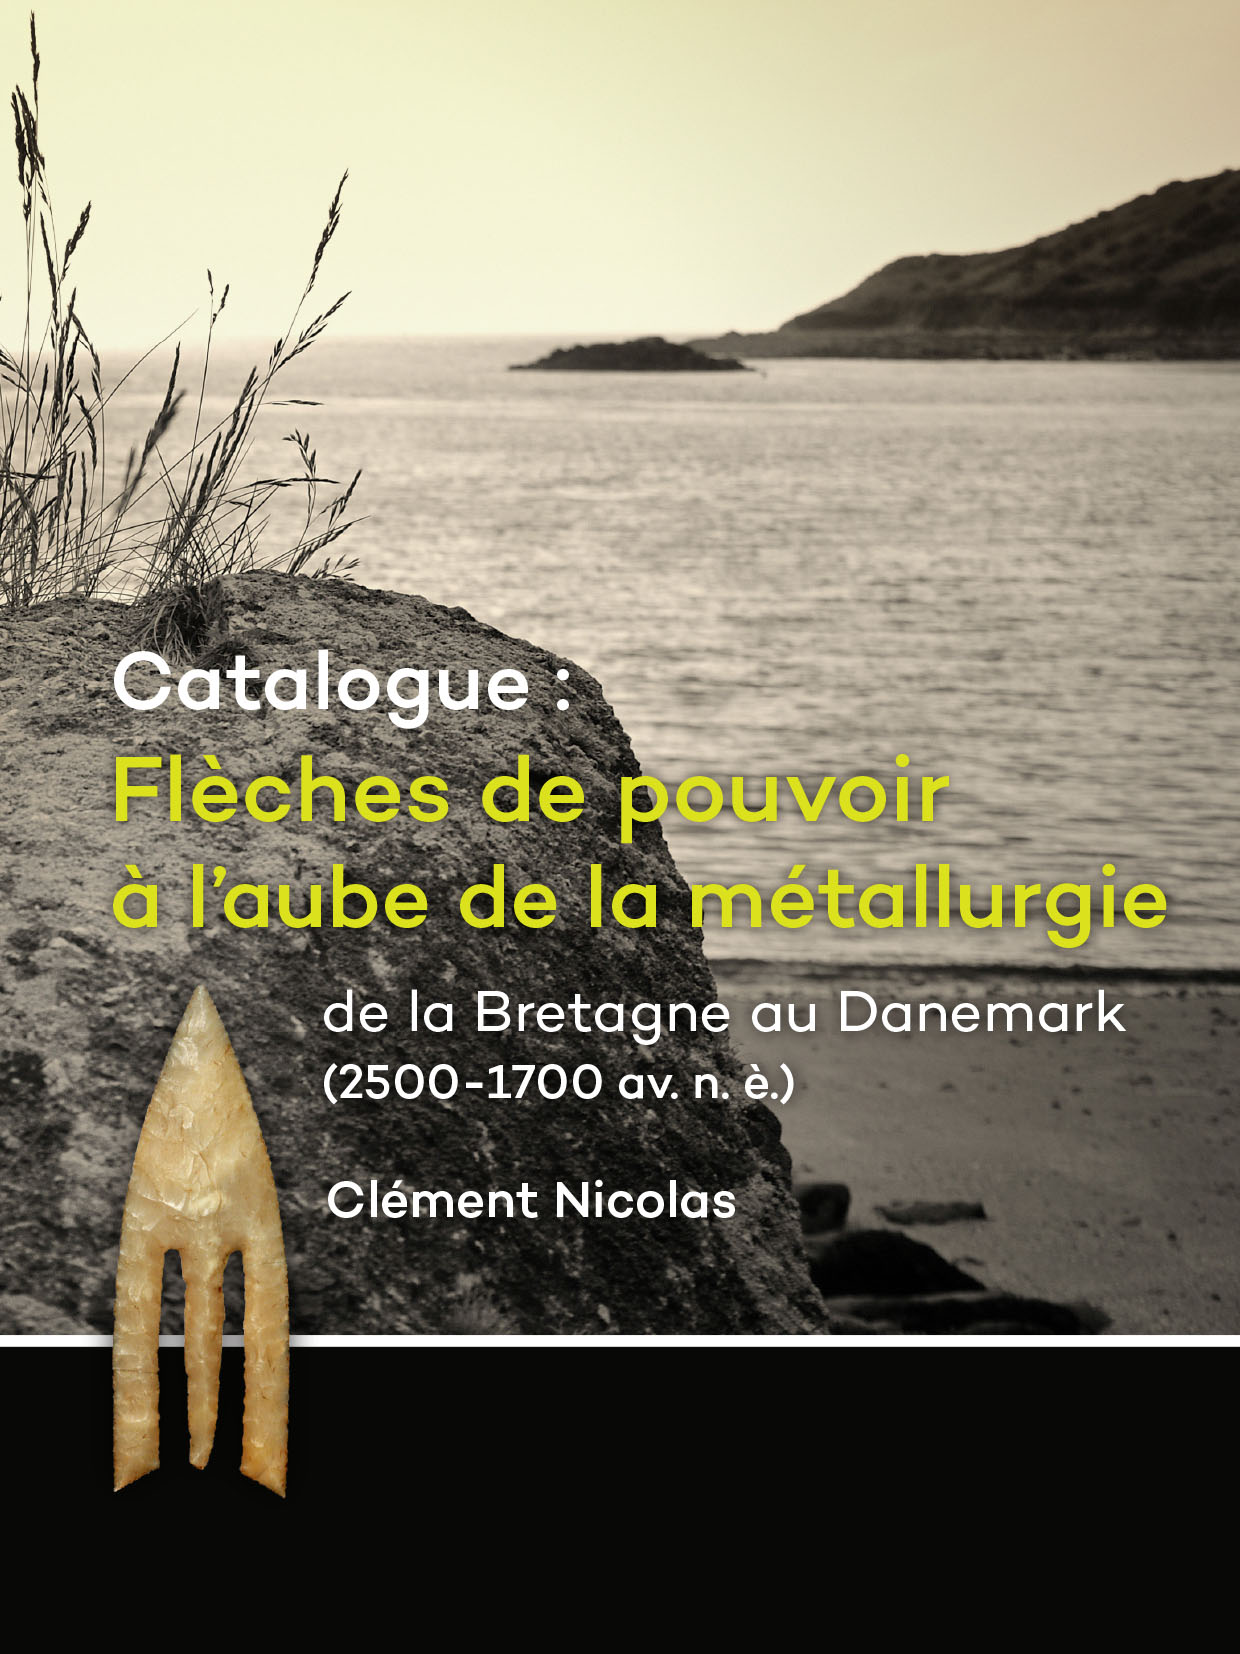 Catalogue: Flèches de pouvoir à l'aube de la métallurgie de la Bretagne au Danemark (2500-1700 av. n. è.), 2016, 524 p.